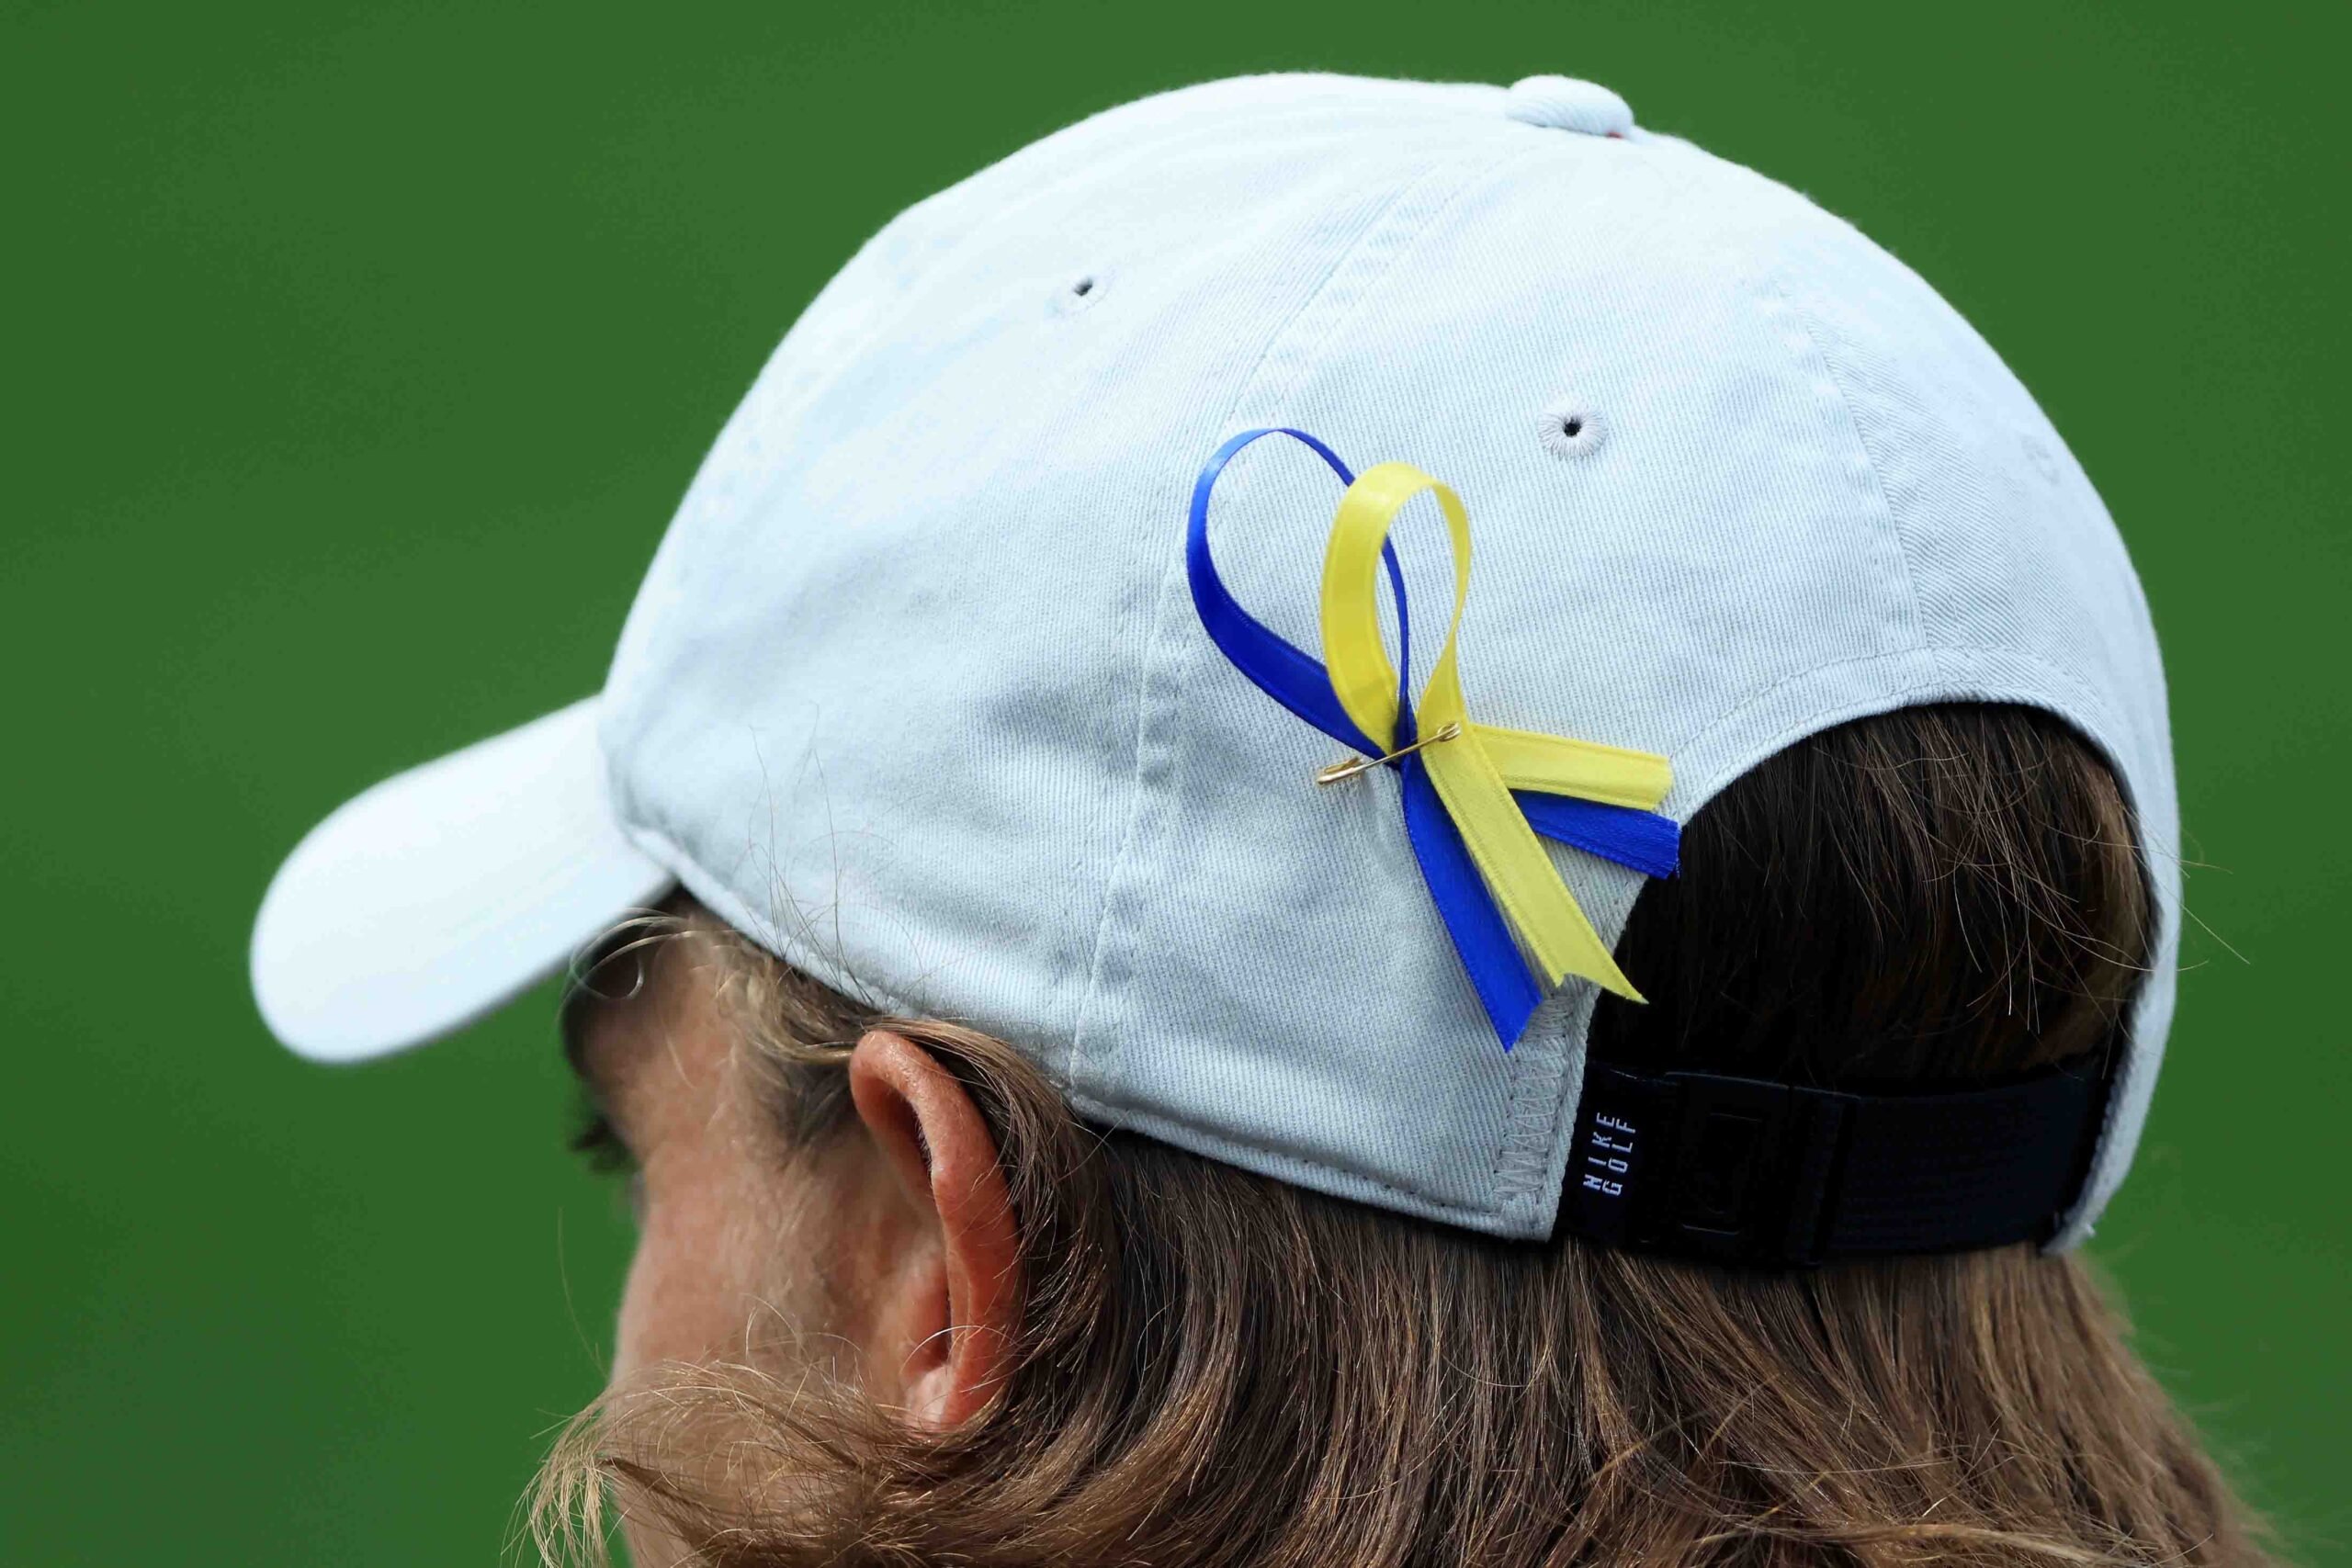 Golf unites behind Ukraine in fundraising appeal